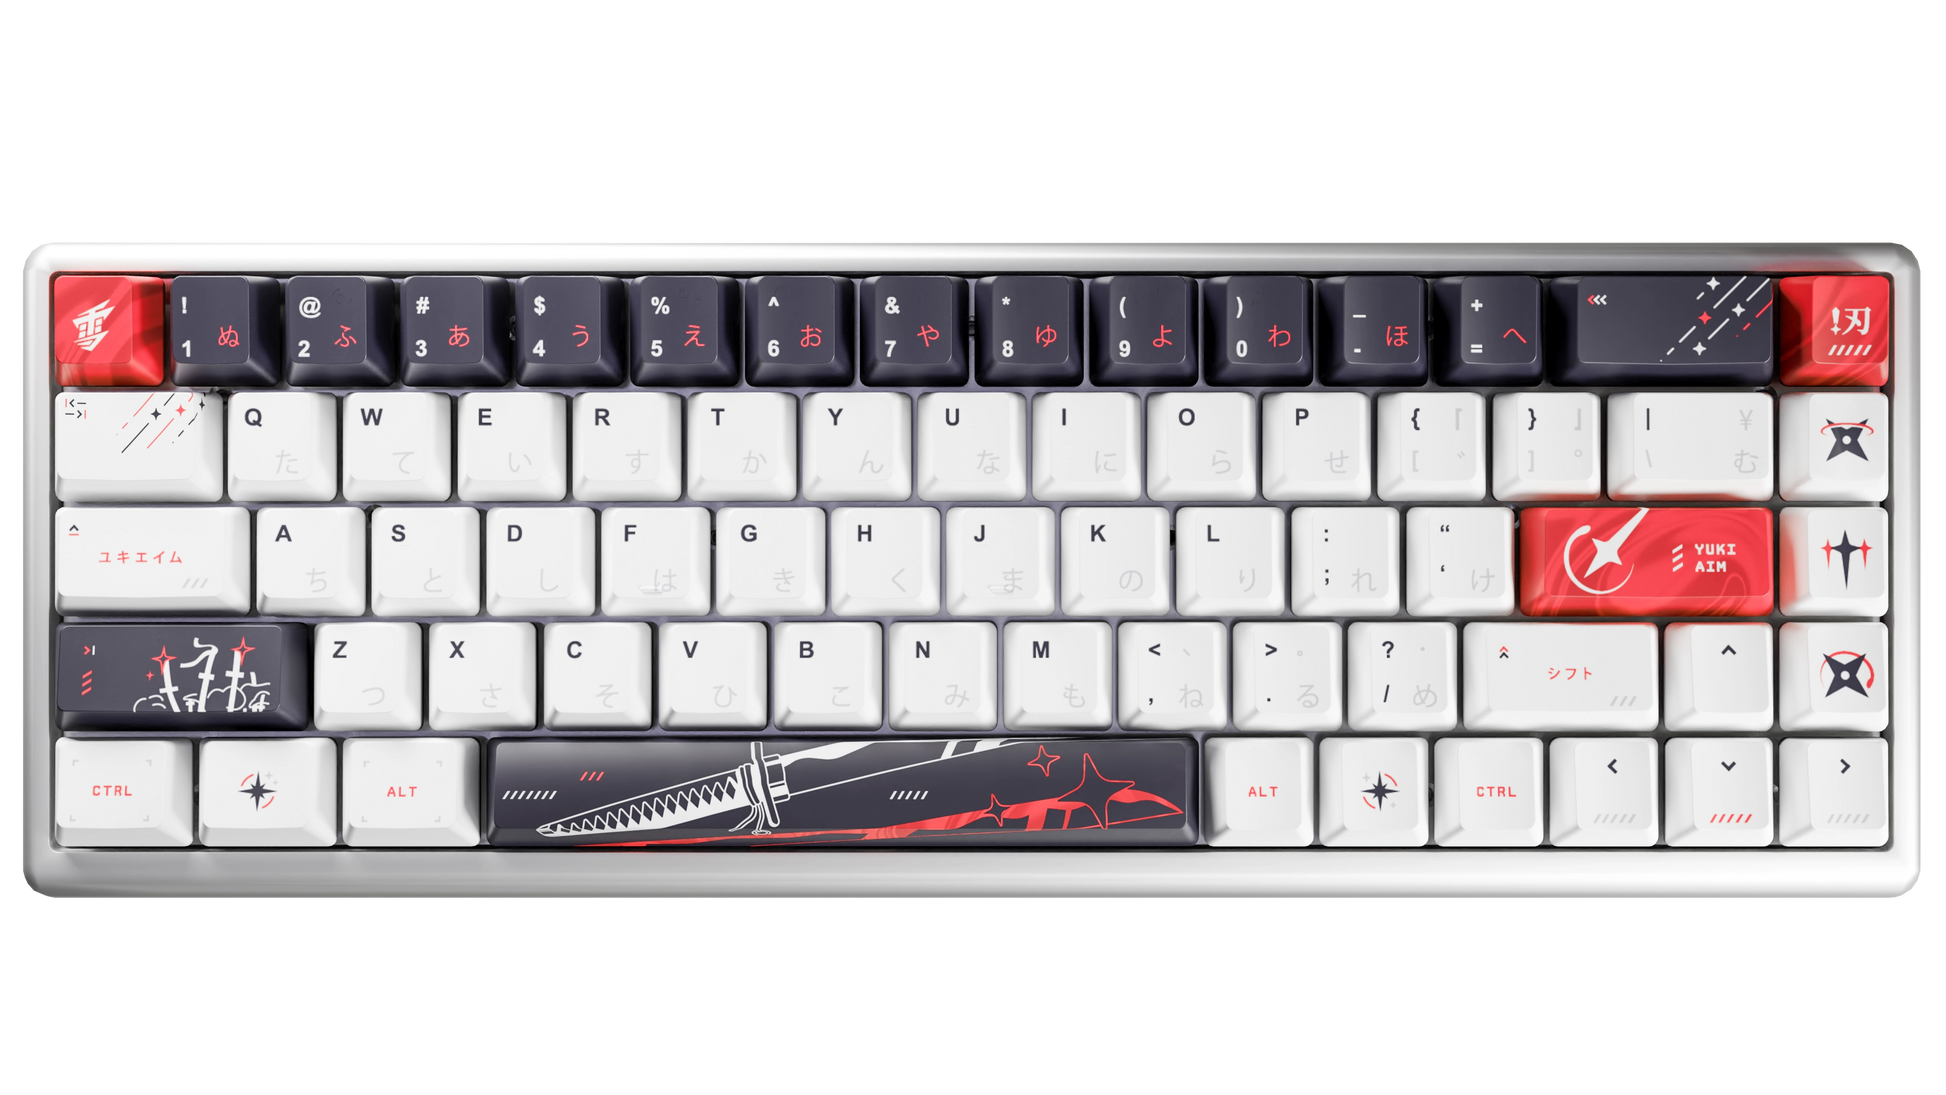 Yuki Aim Polar 65 Keyboard KatanaEdition値段交渉もある程度受け付けます